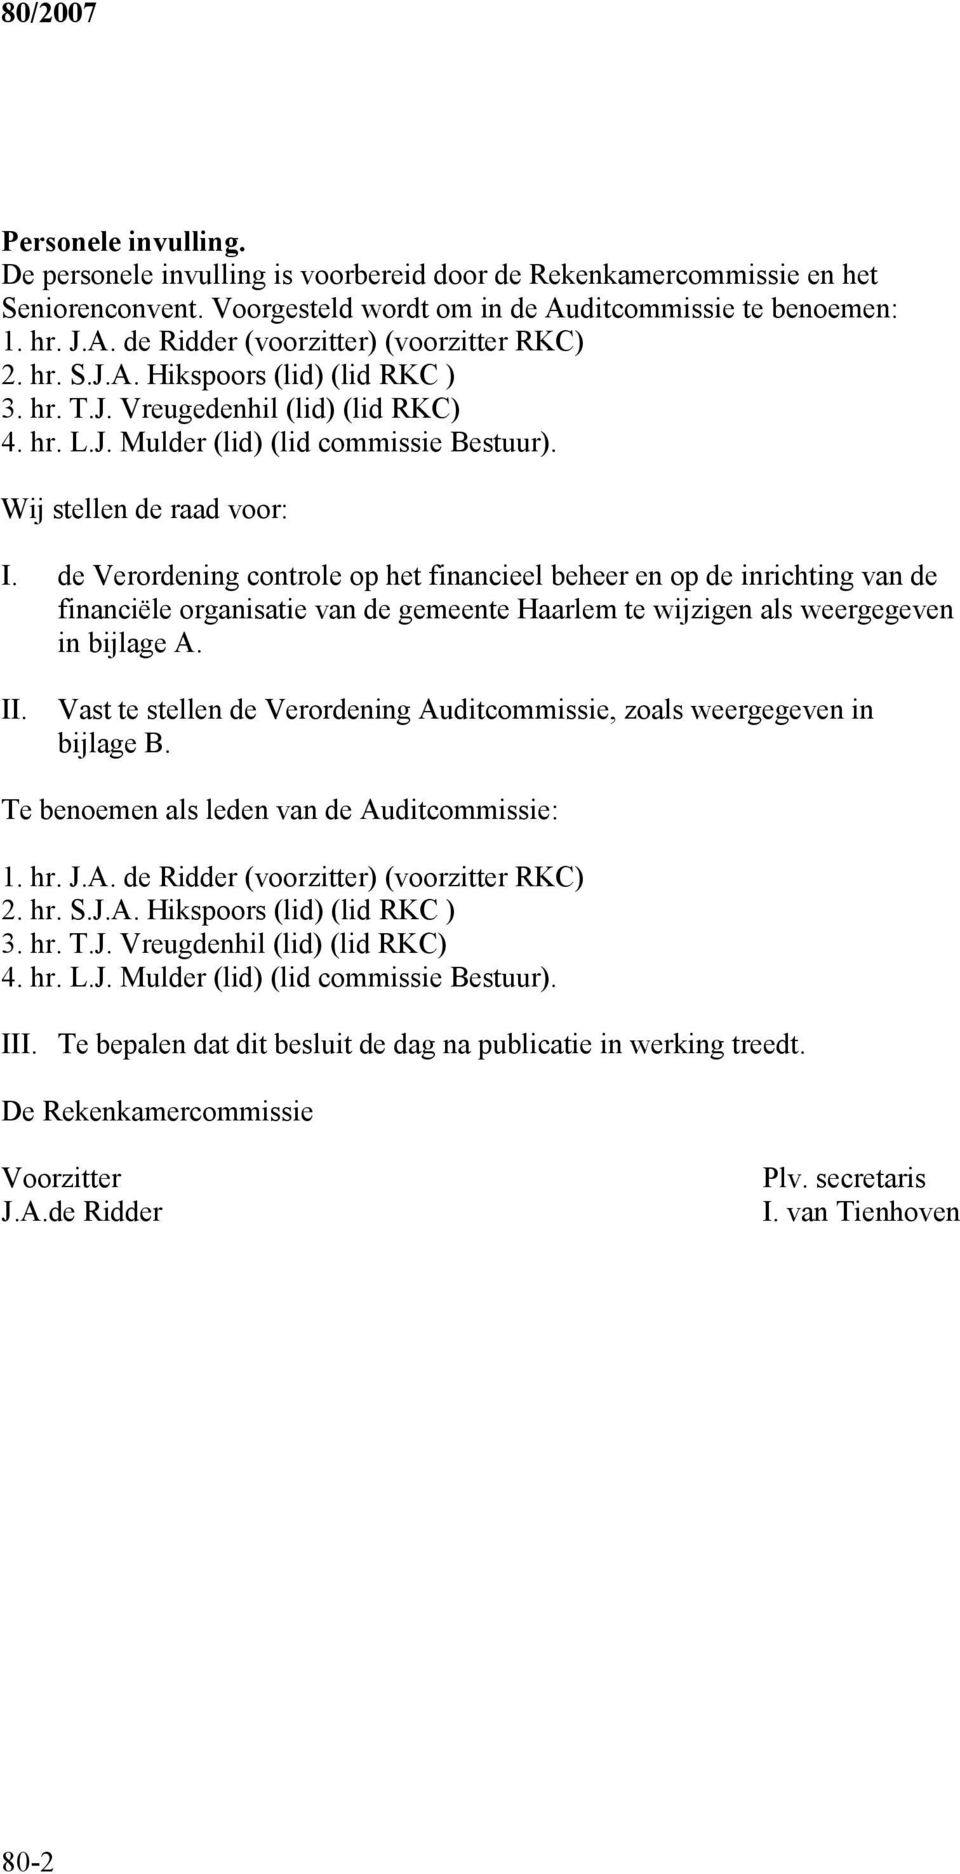 de Verordening controle op het financieel beheer en op de inrichting van de financiële organisatie van de gemeente Haarlem te wijzigen als weergegeven in bijlage A. II.